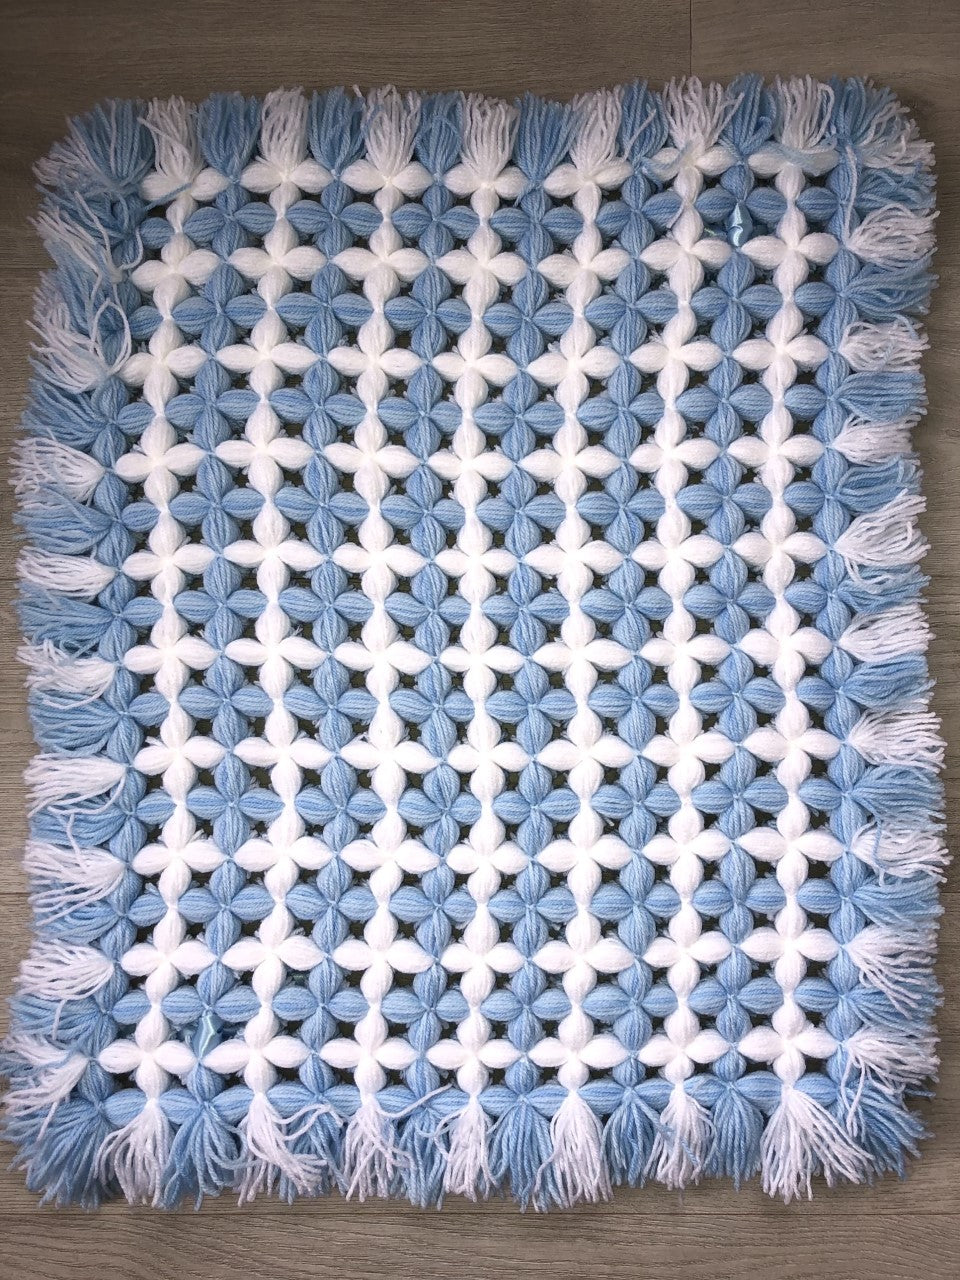 Hand Knitted Pram Blanket Blue/White